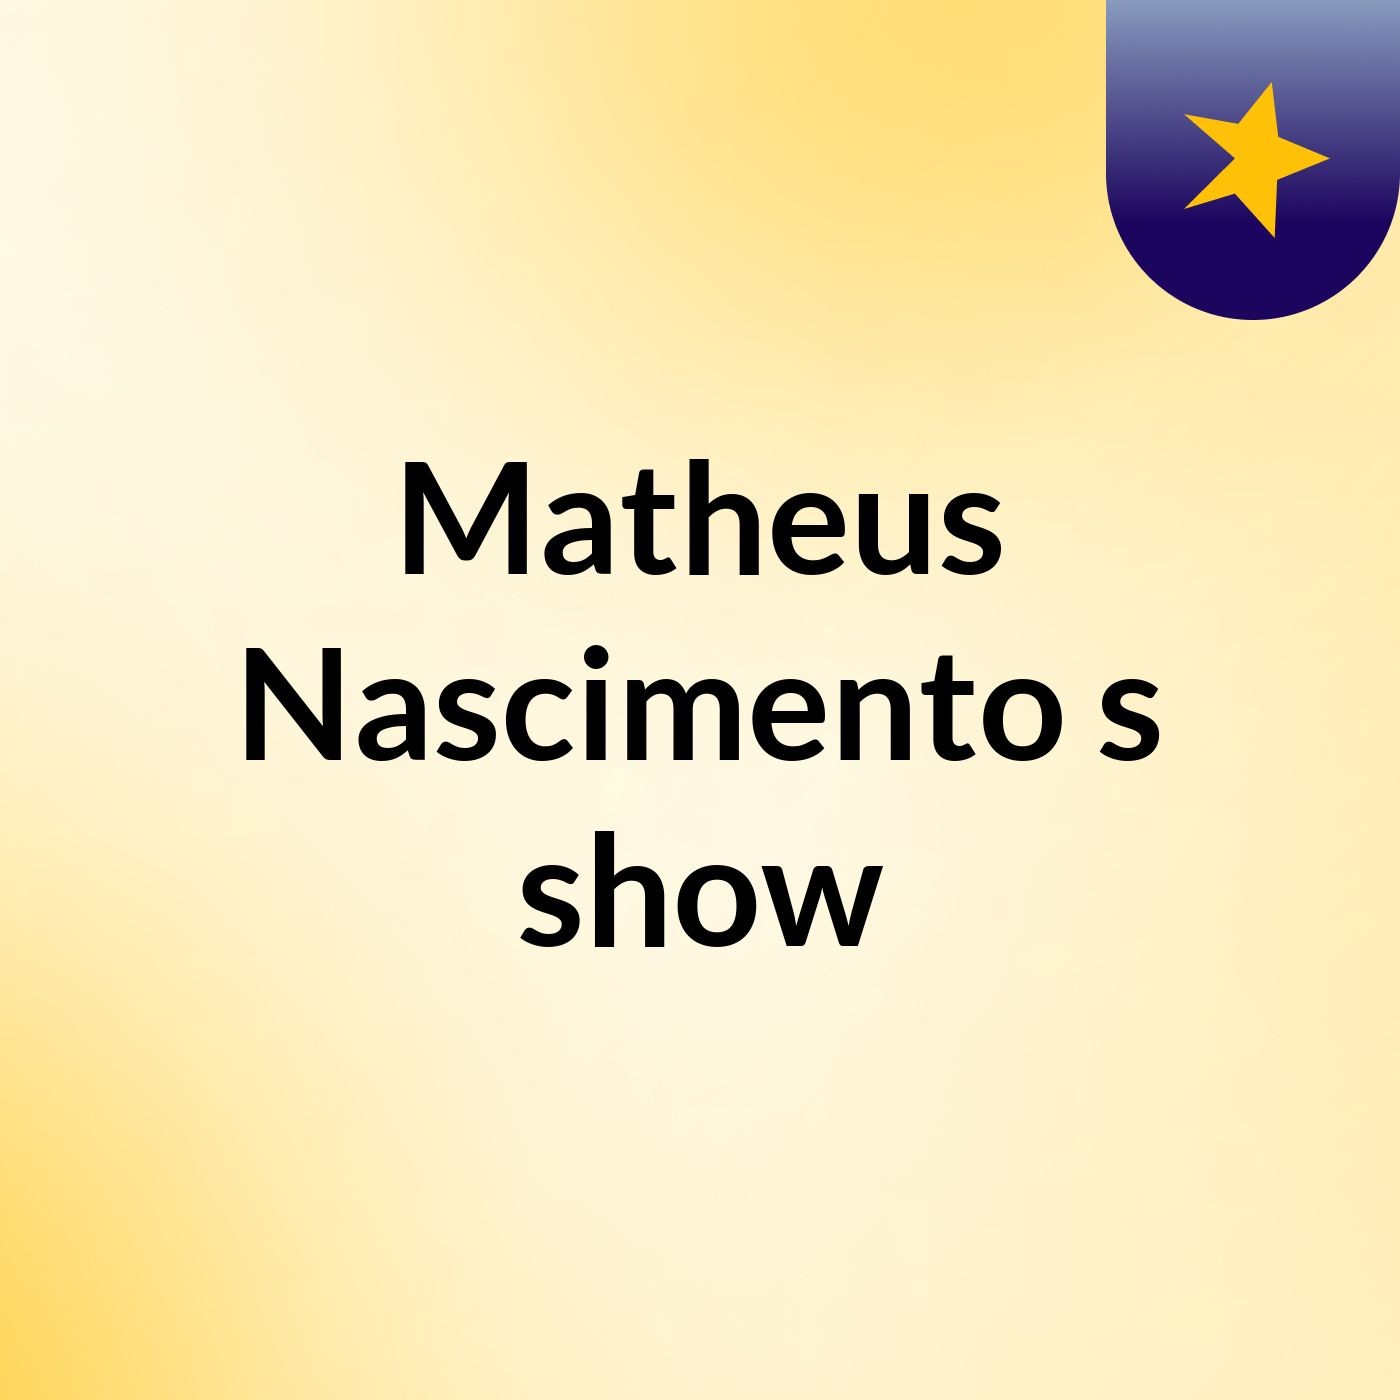 Matheus Nascimento's show